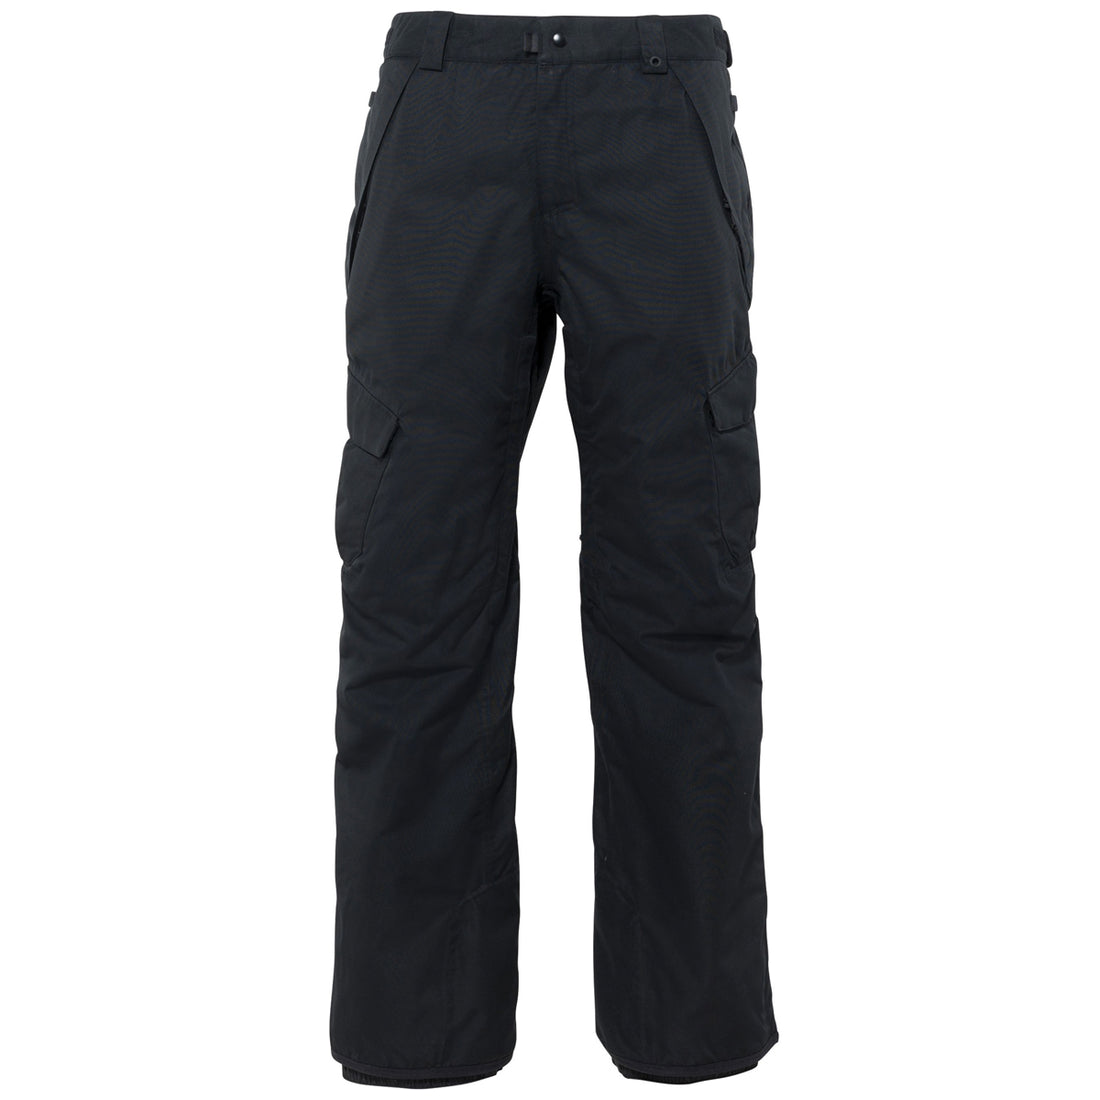 686 Outline Black Snowboard Pants